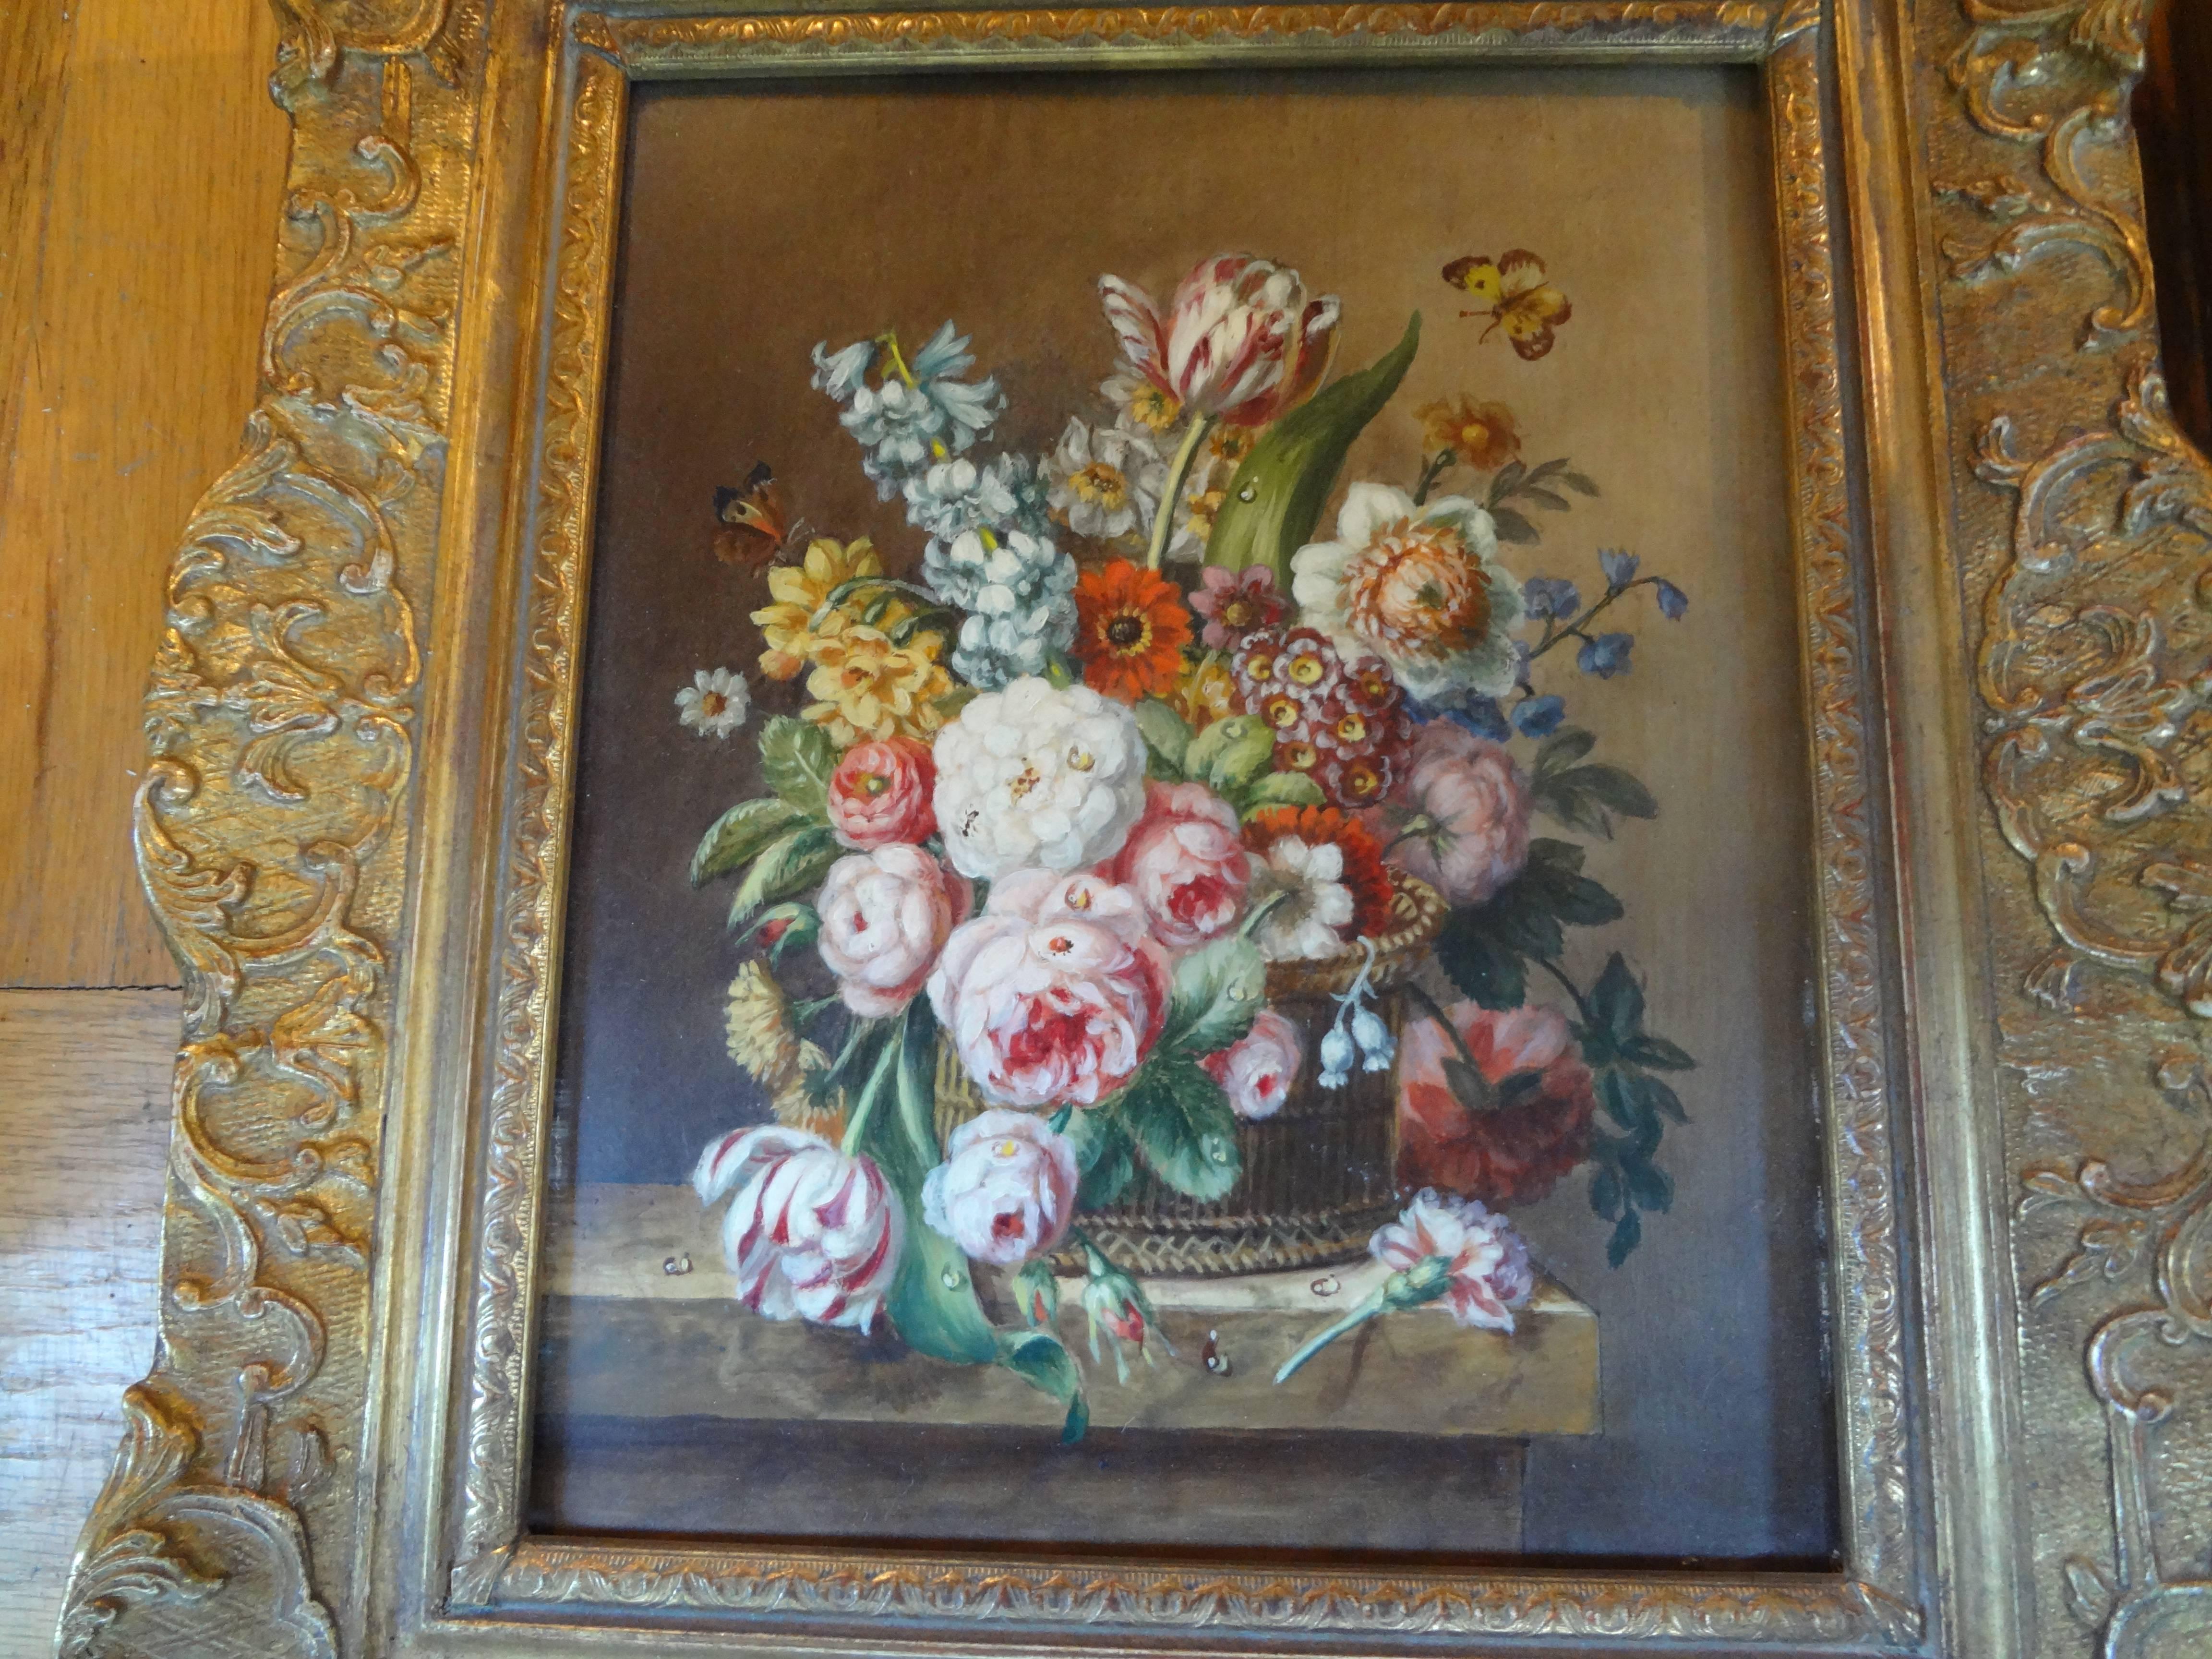 Paire de peintures à l'huile florales anciennes encadrées.
Paire d'anciennes peintures à l'huile florales sur bois dans des cadres en bois doré, vers 1920 ou plus tôt. Ces magnifiques peintures à l'huile anciennes décoratives de style 18e siècle